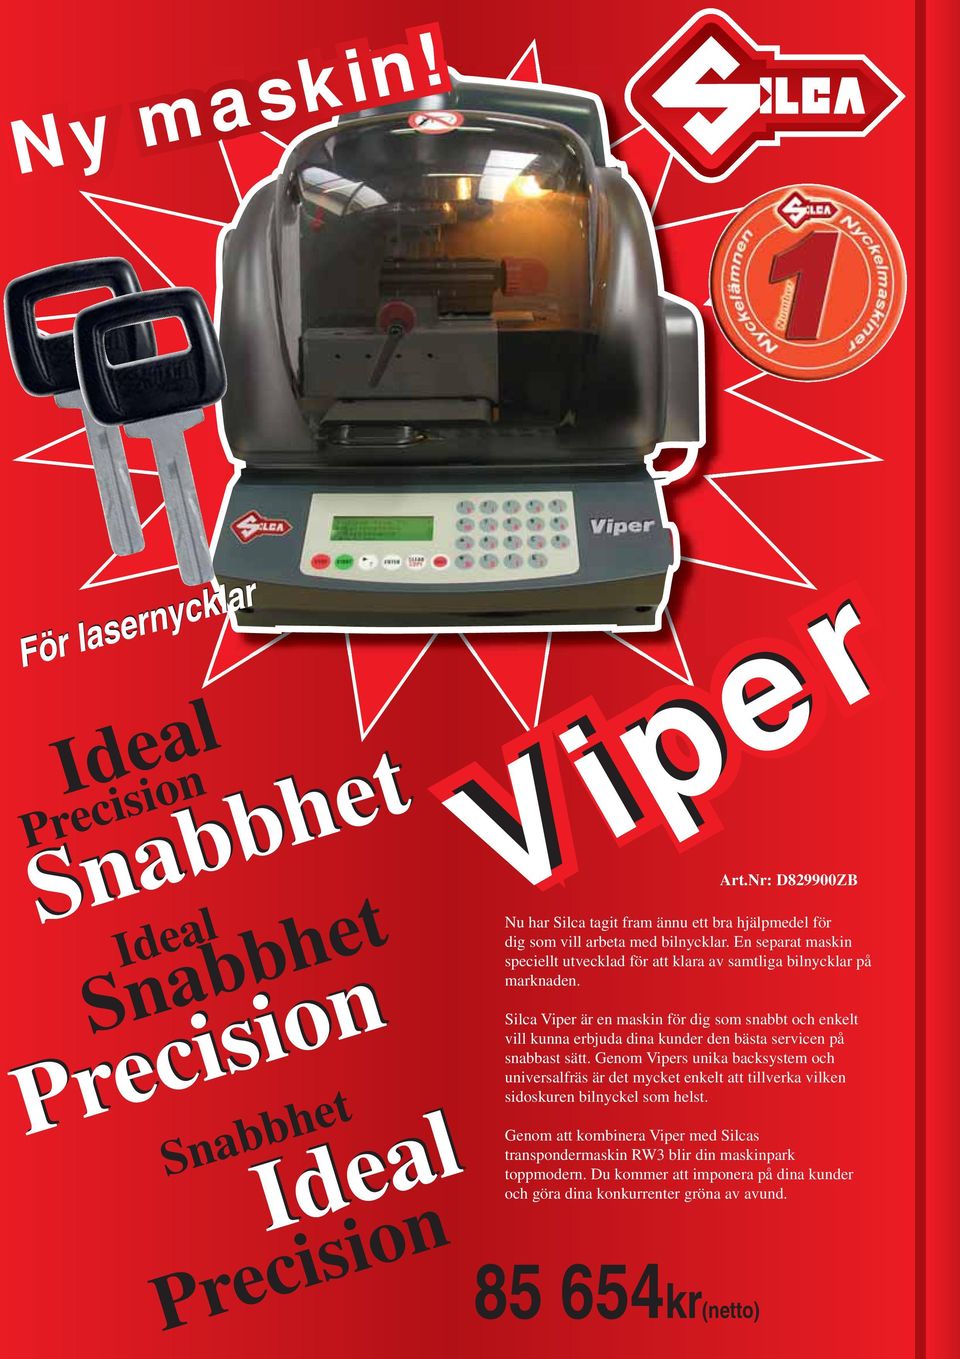 Silca Viper är en maskin för dig som snabbt och enkelt vill kunna erbjuda dina kunder den bästa servicen på snabbast sätt.